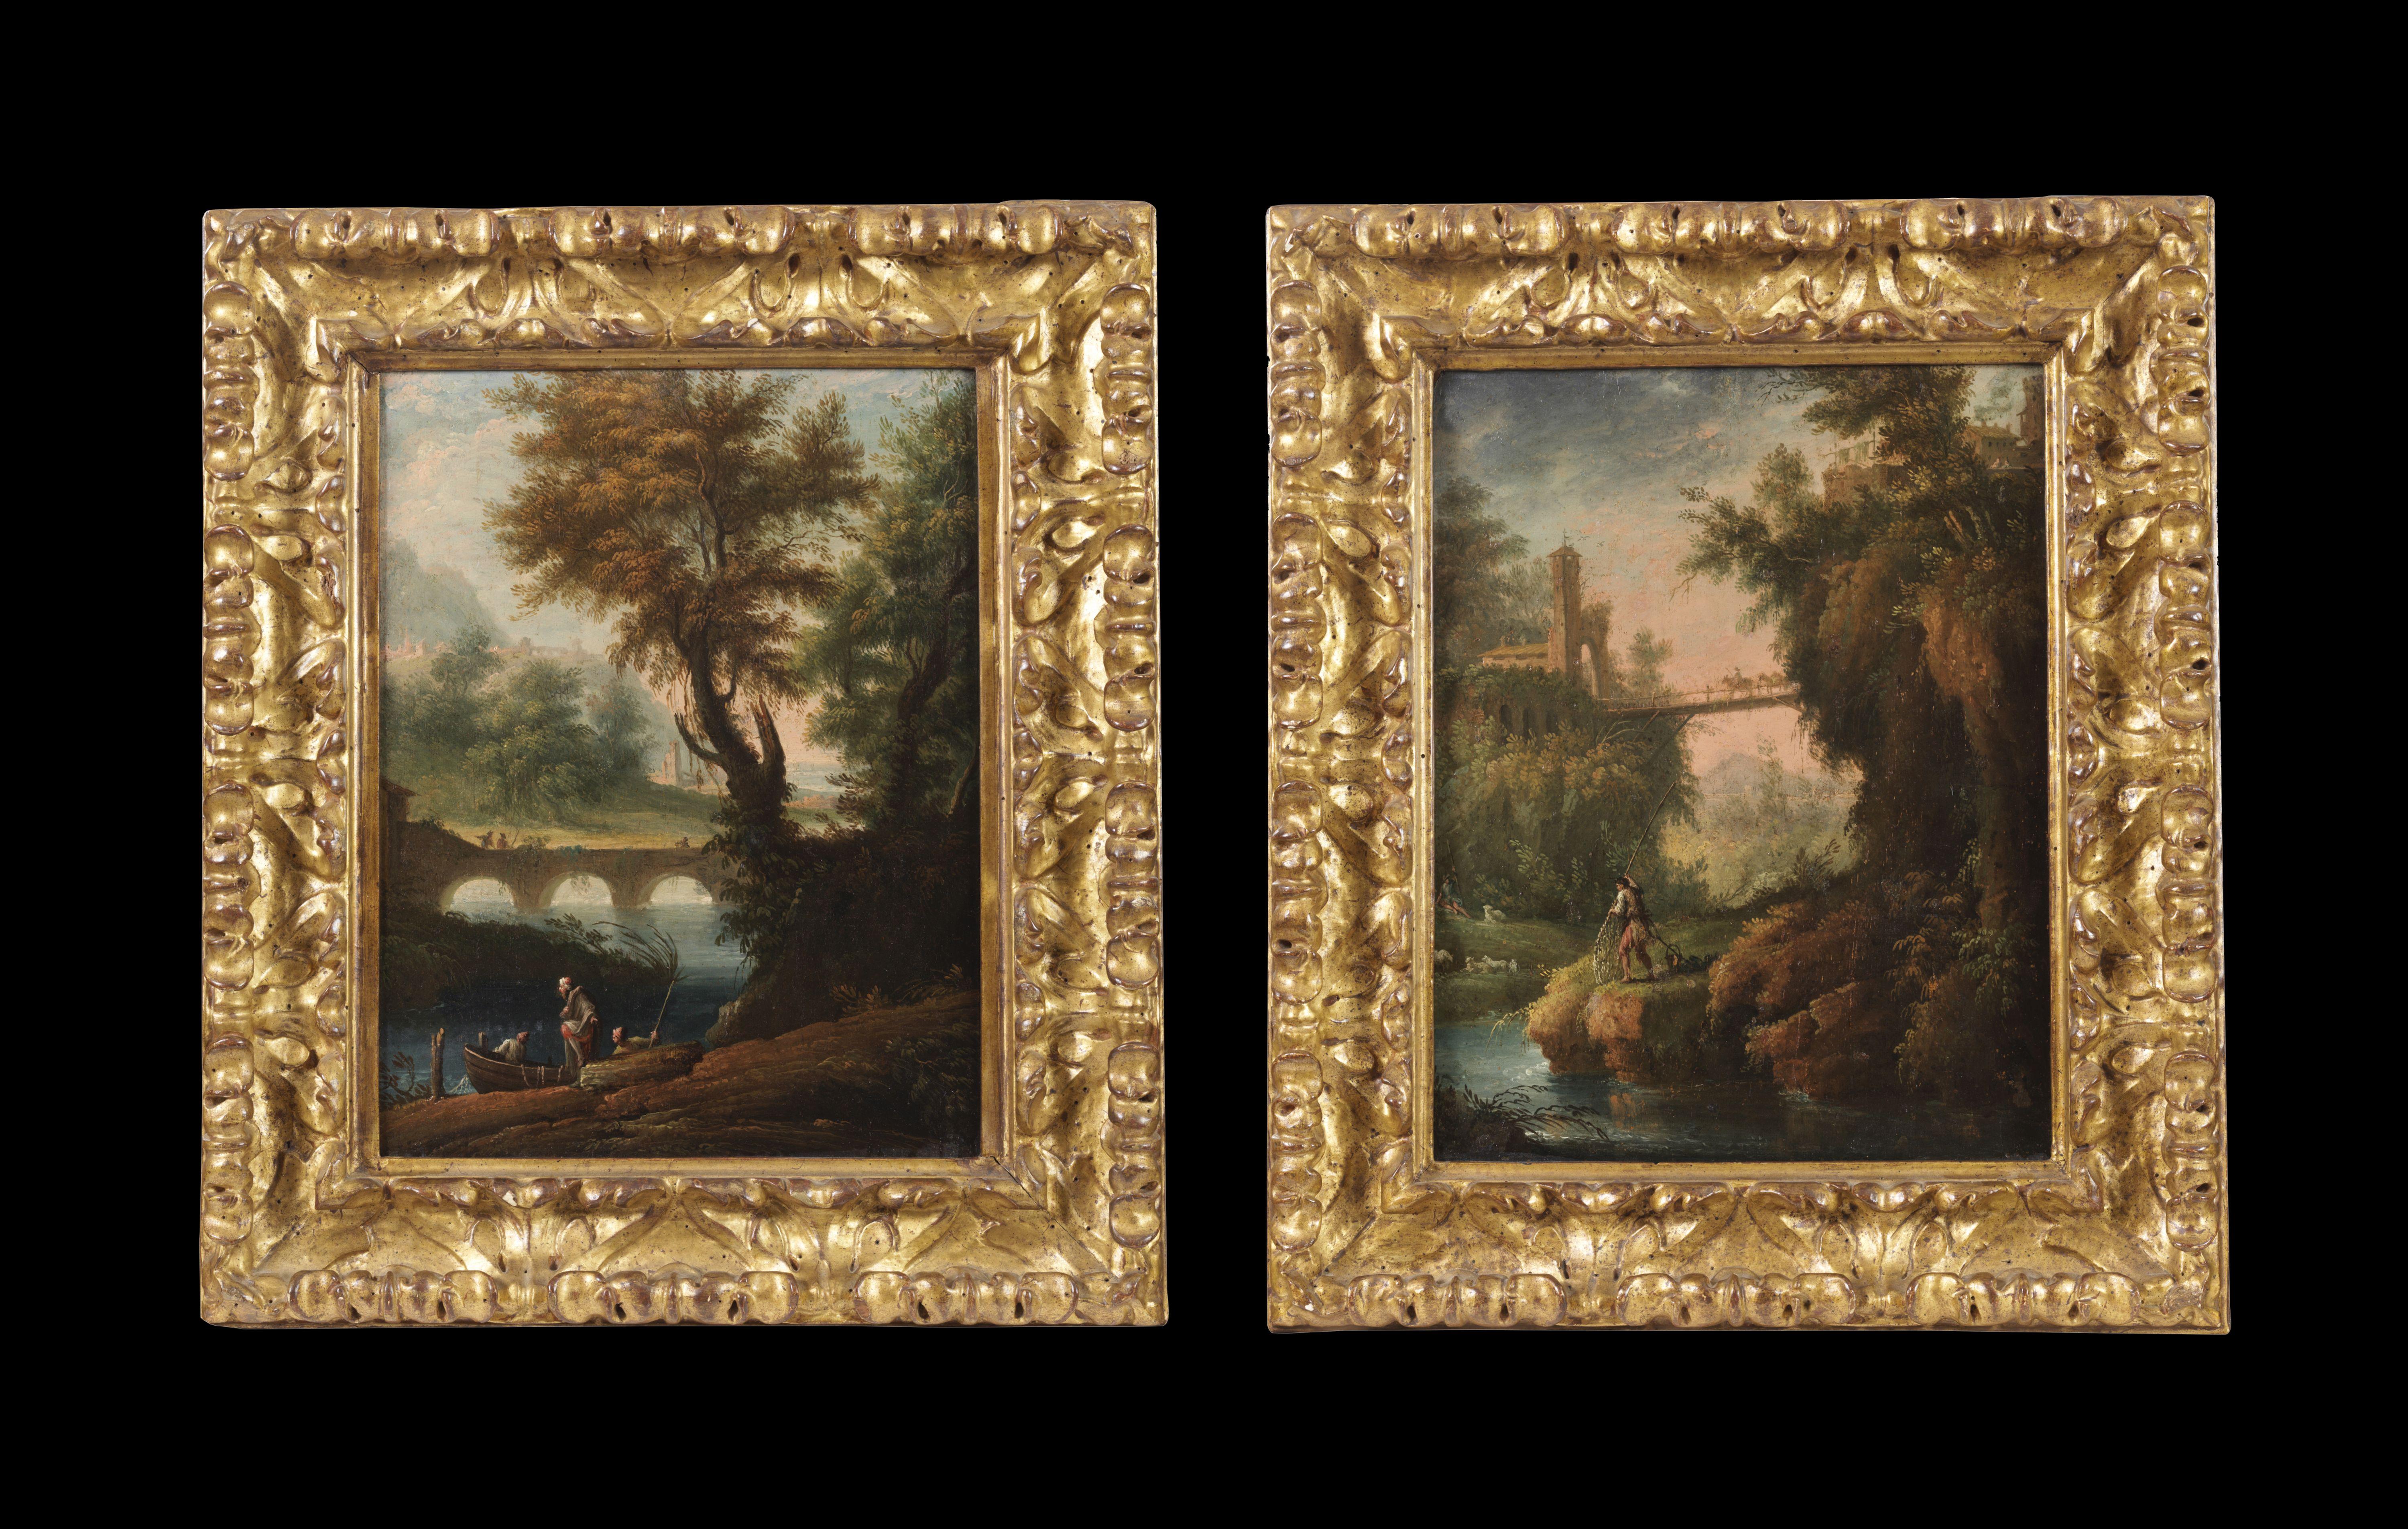 Ich habe mit großem Interesse dieses Gemäldepaar betrachtet, das angenehme und geschmackvolle "Landschaften" darstellt (Gemälde in Öl auf Tafel, 33 x 26 cm ohne Rahmen und 50 x 42 cm mit schönen zeitgenössischen Rahmen), mit Fischern bei der Arbeit